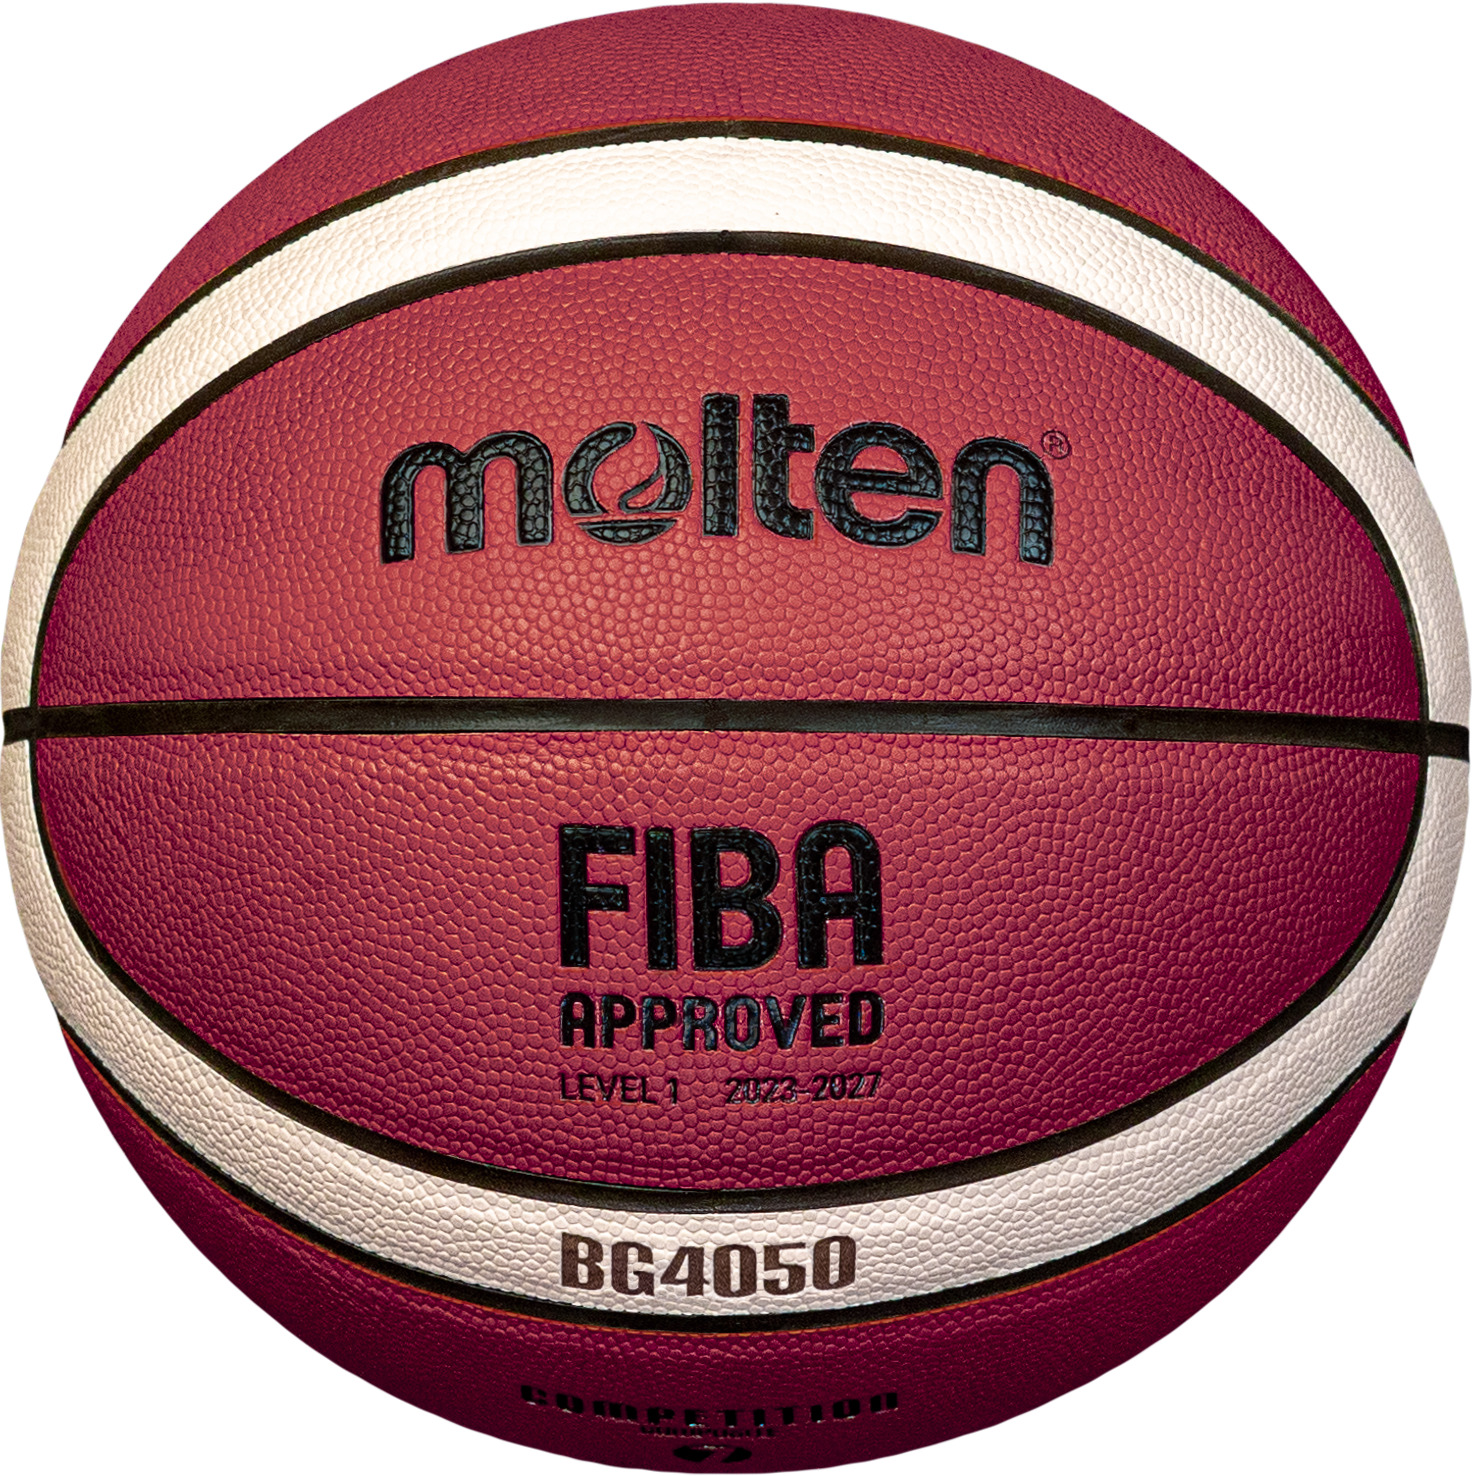 Molten B7G4050-DBB Basketball